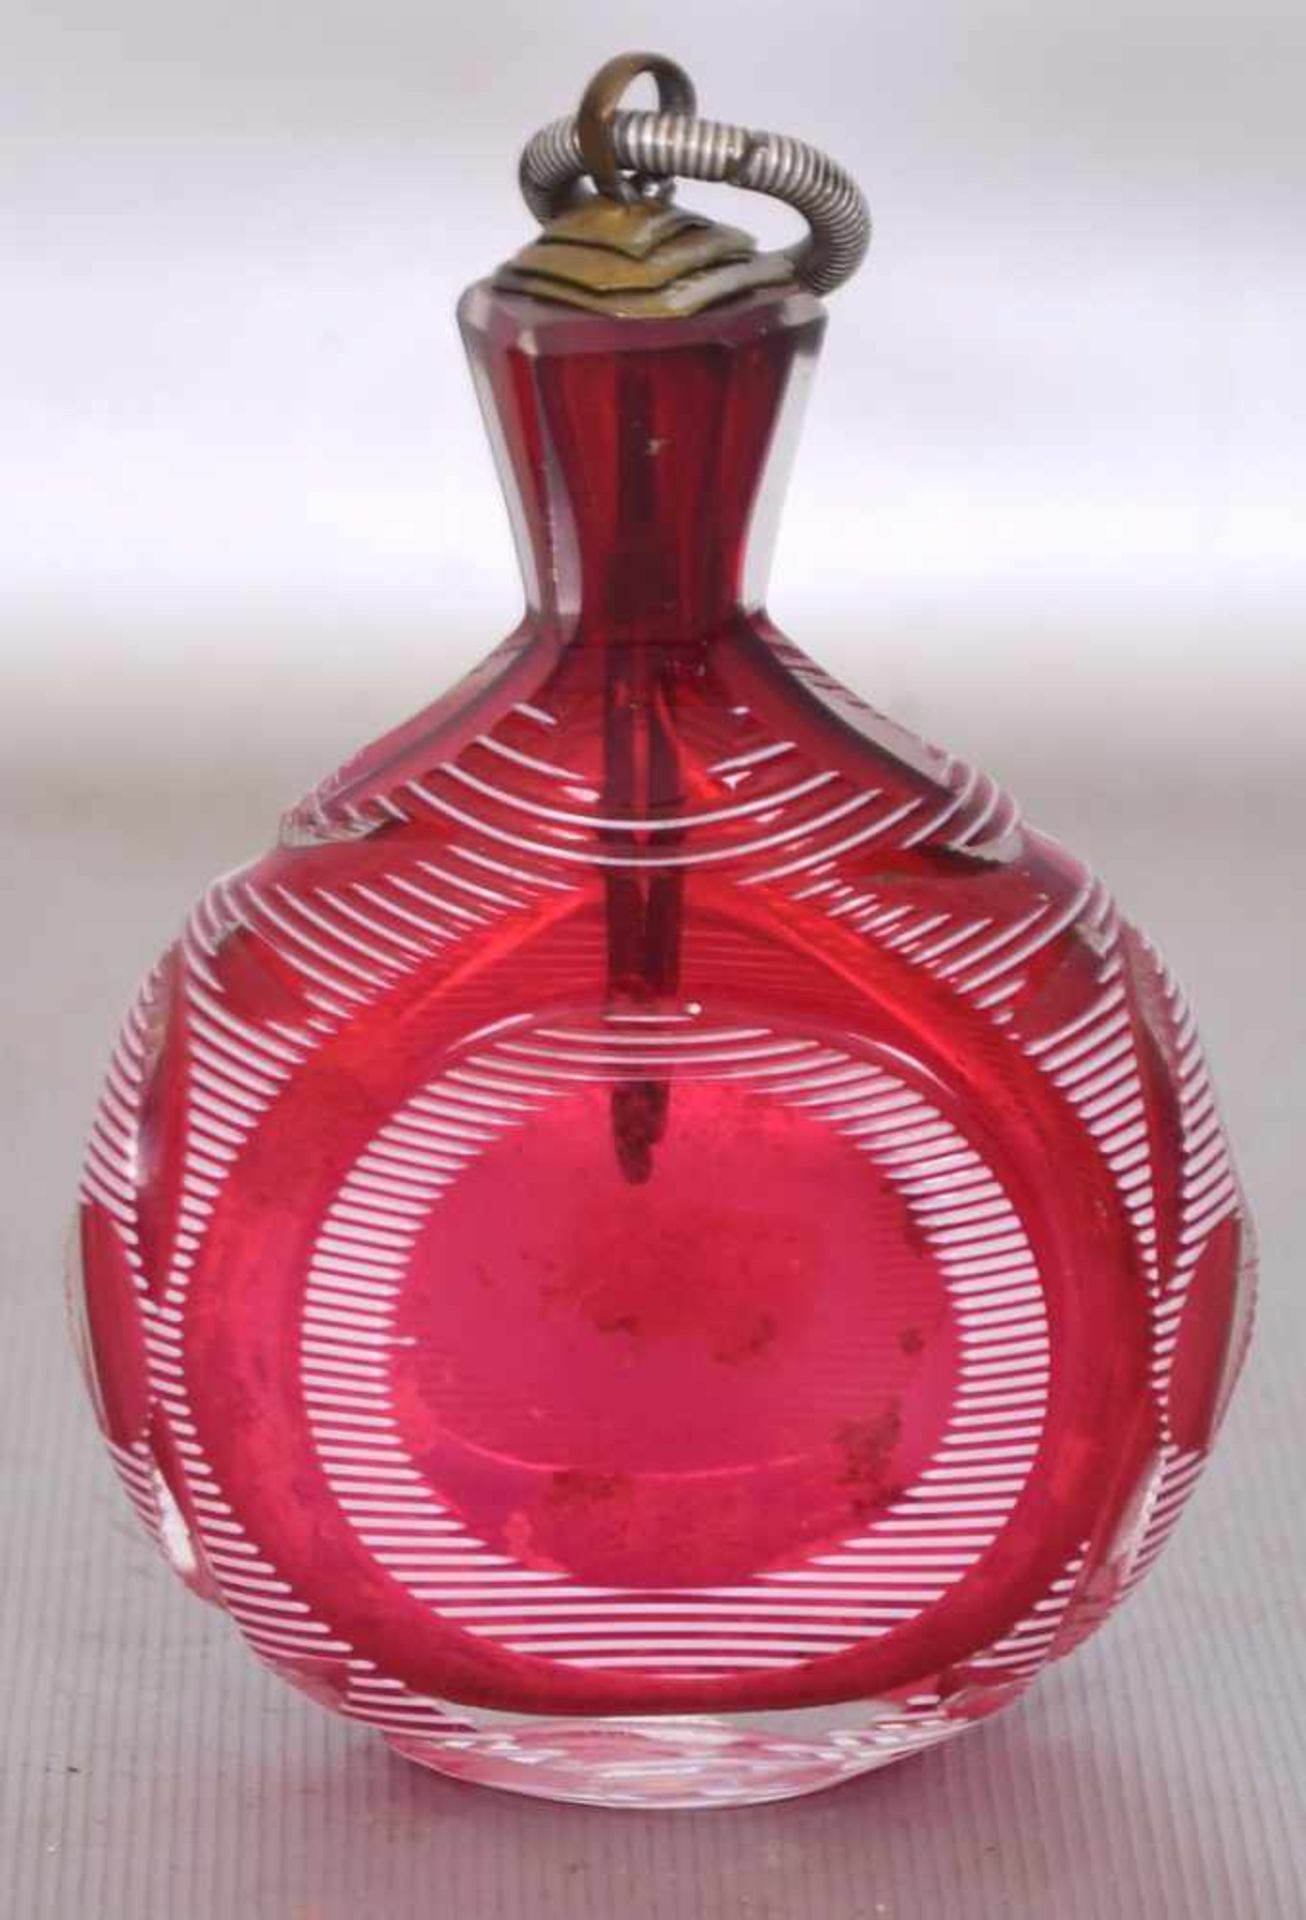 Riechfläschchenfarbl. Glas, geschliffen verziert, mit rotem Überfang, H 10 cm, 19. Jh.